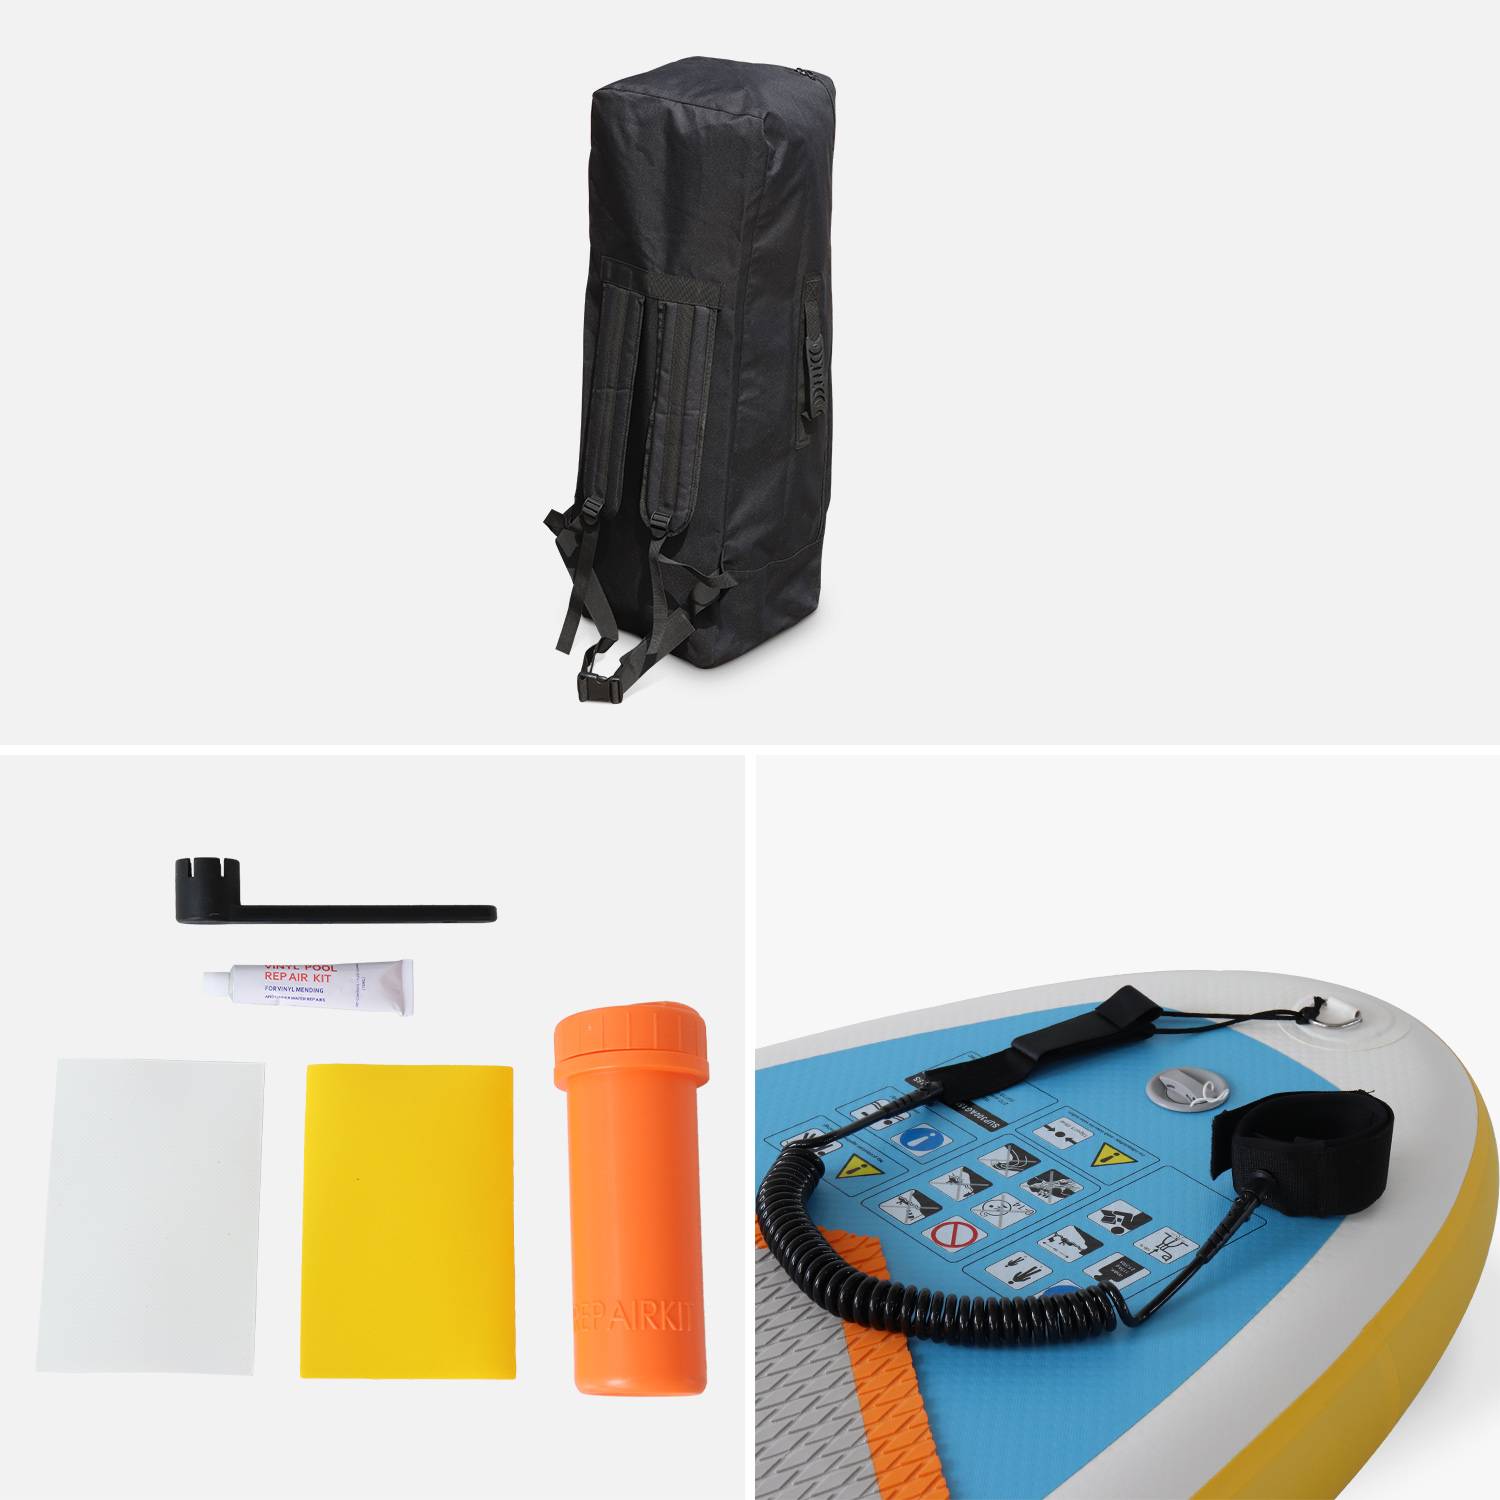 Pack stand up paddle gonflable Nico 9'9" avec pompe haute pression, pagaie, leash et sac de rangement inclus Photo4